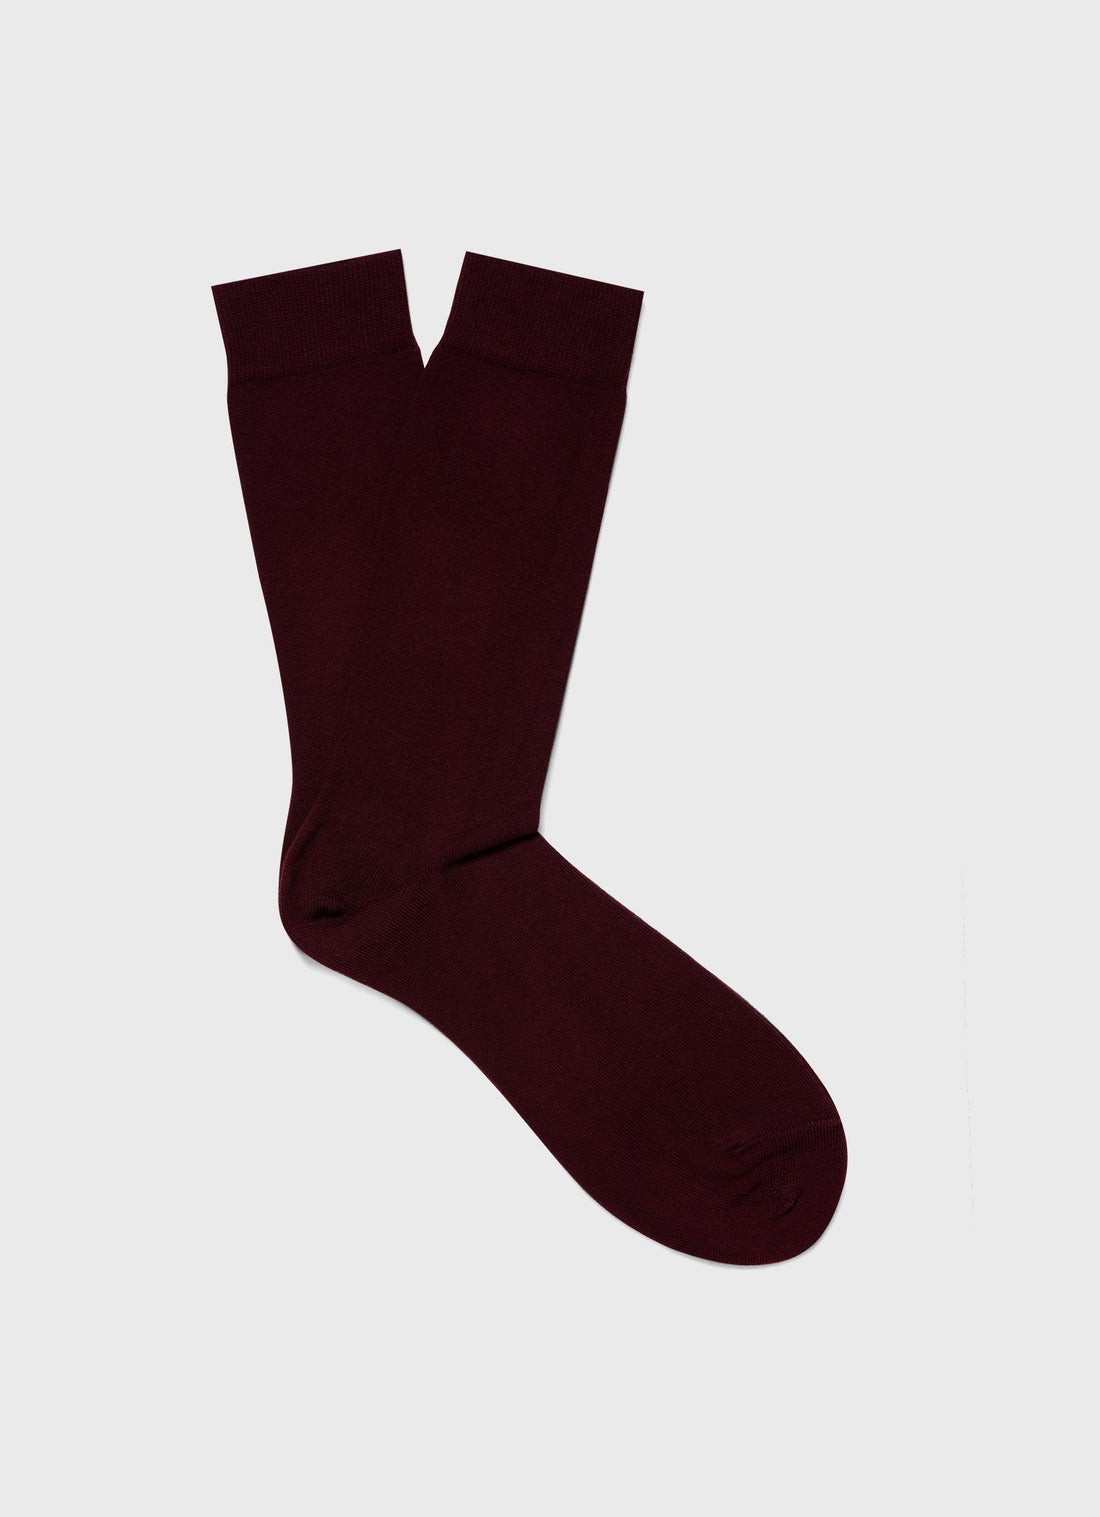 Men's Cotton Socks in Maroon